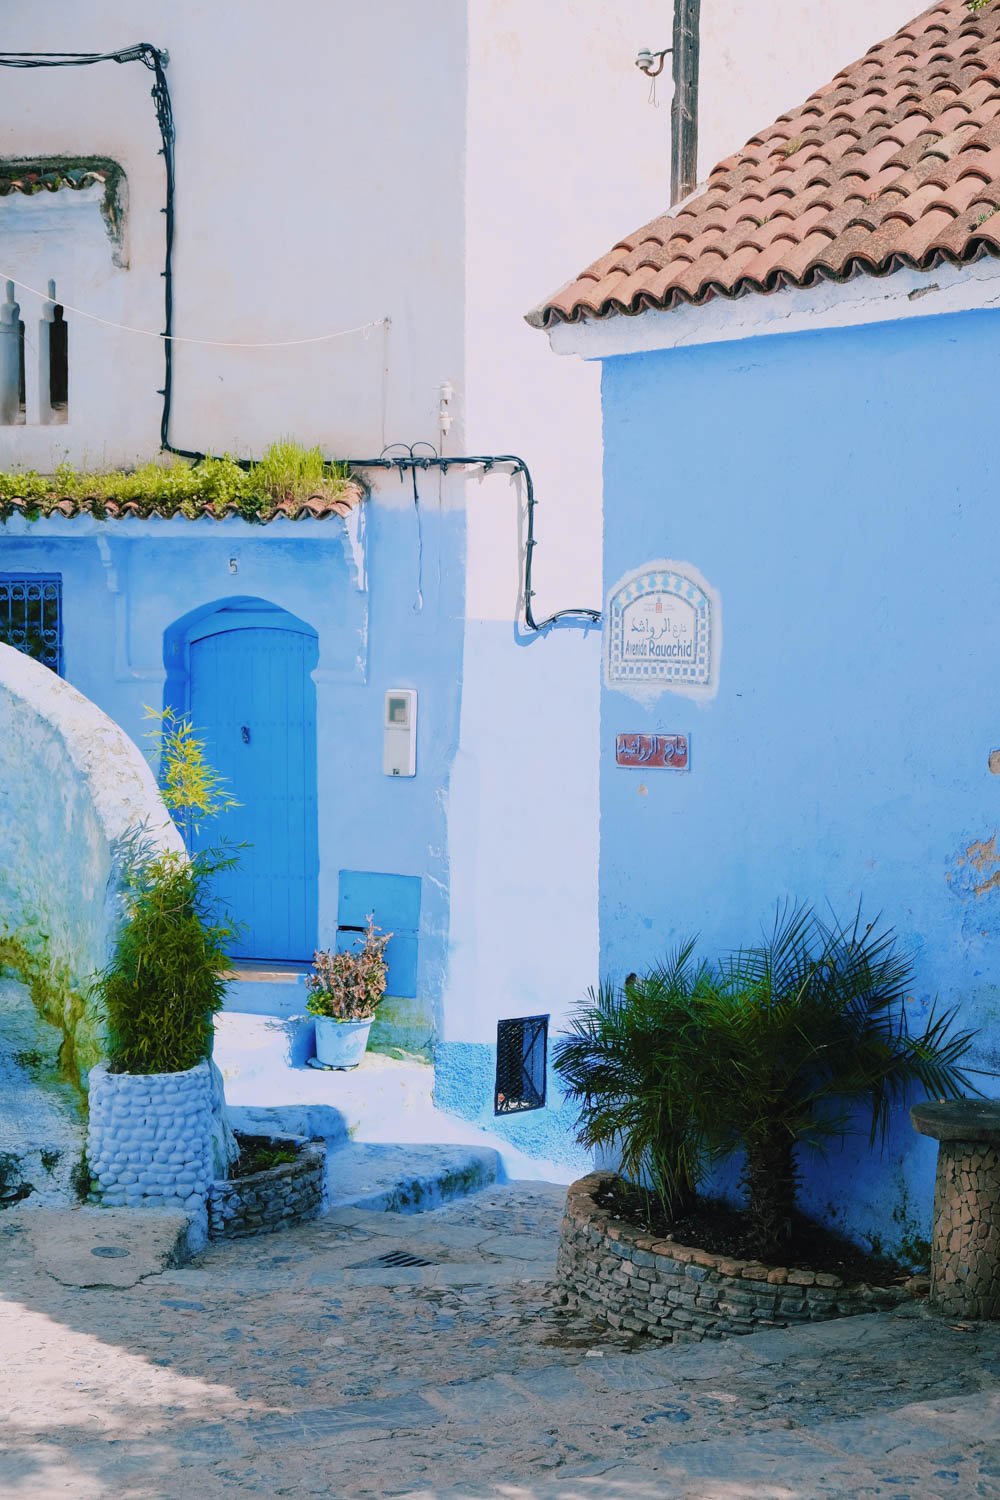 Rue de Chefchaouen, la ciudad azul - Marruecos